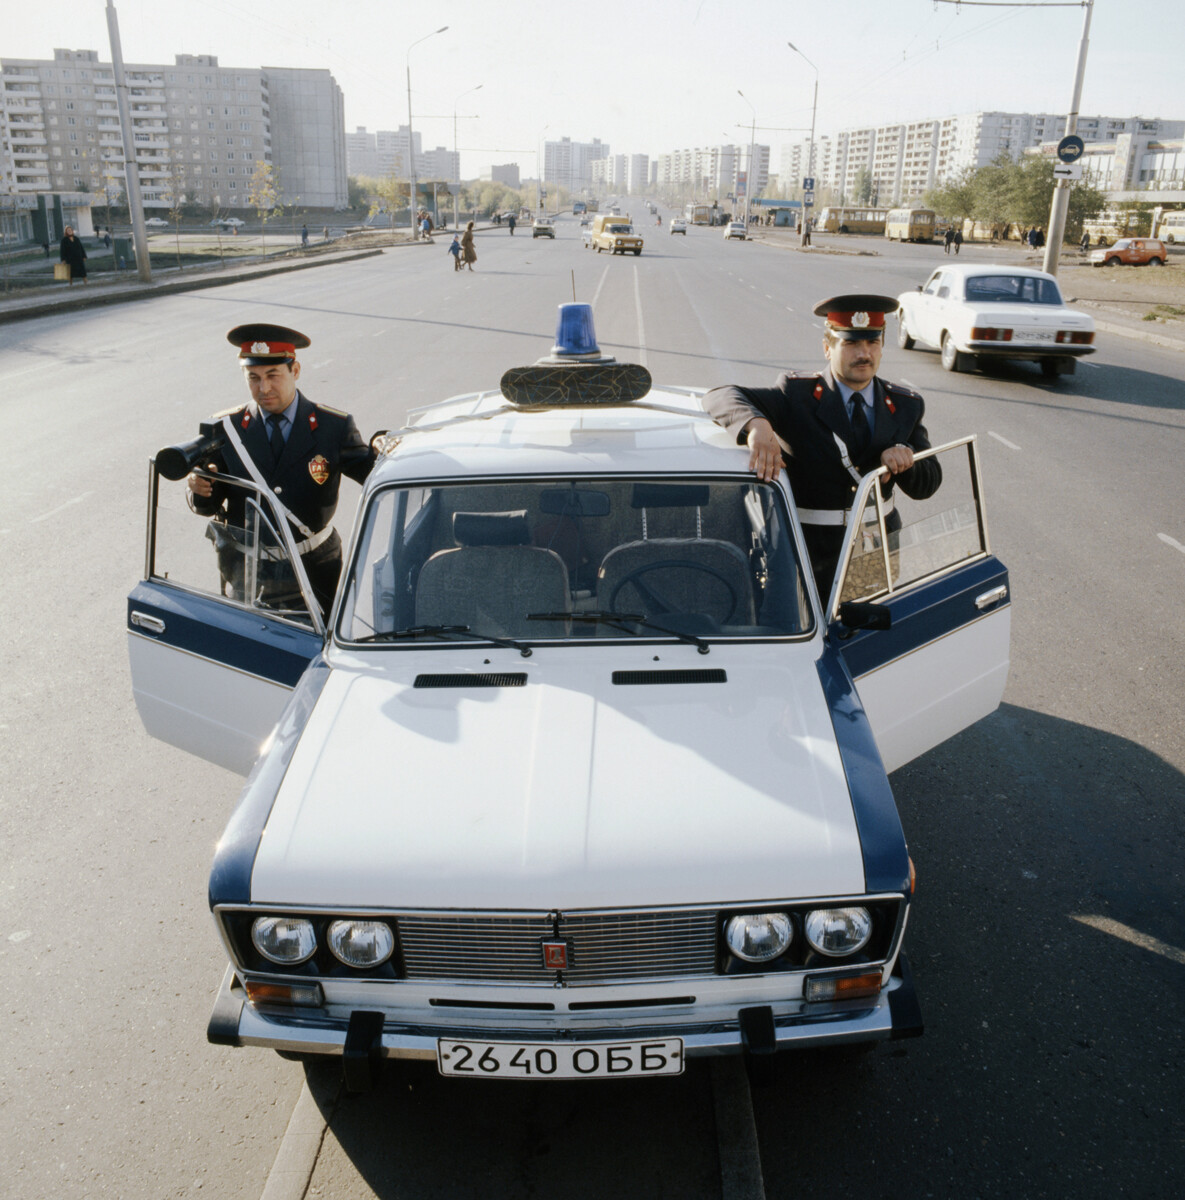 ZSSR. Orenburg. 21. november 1989. Orenburška prometna milica, poročnik Jurij Kovalj in podčastnik Šamil Gizatulin